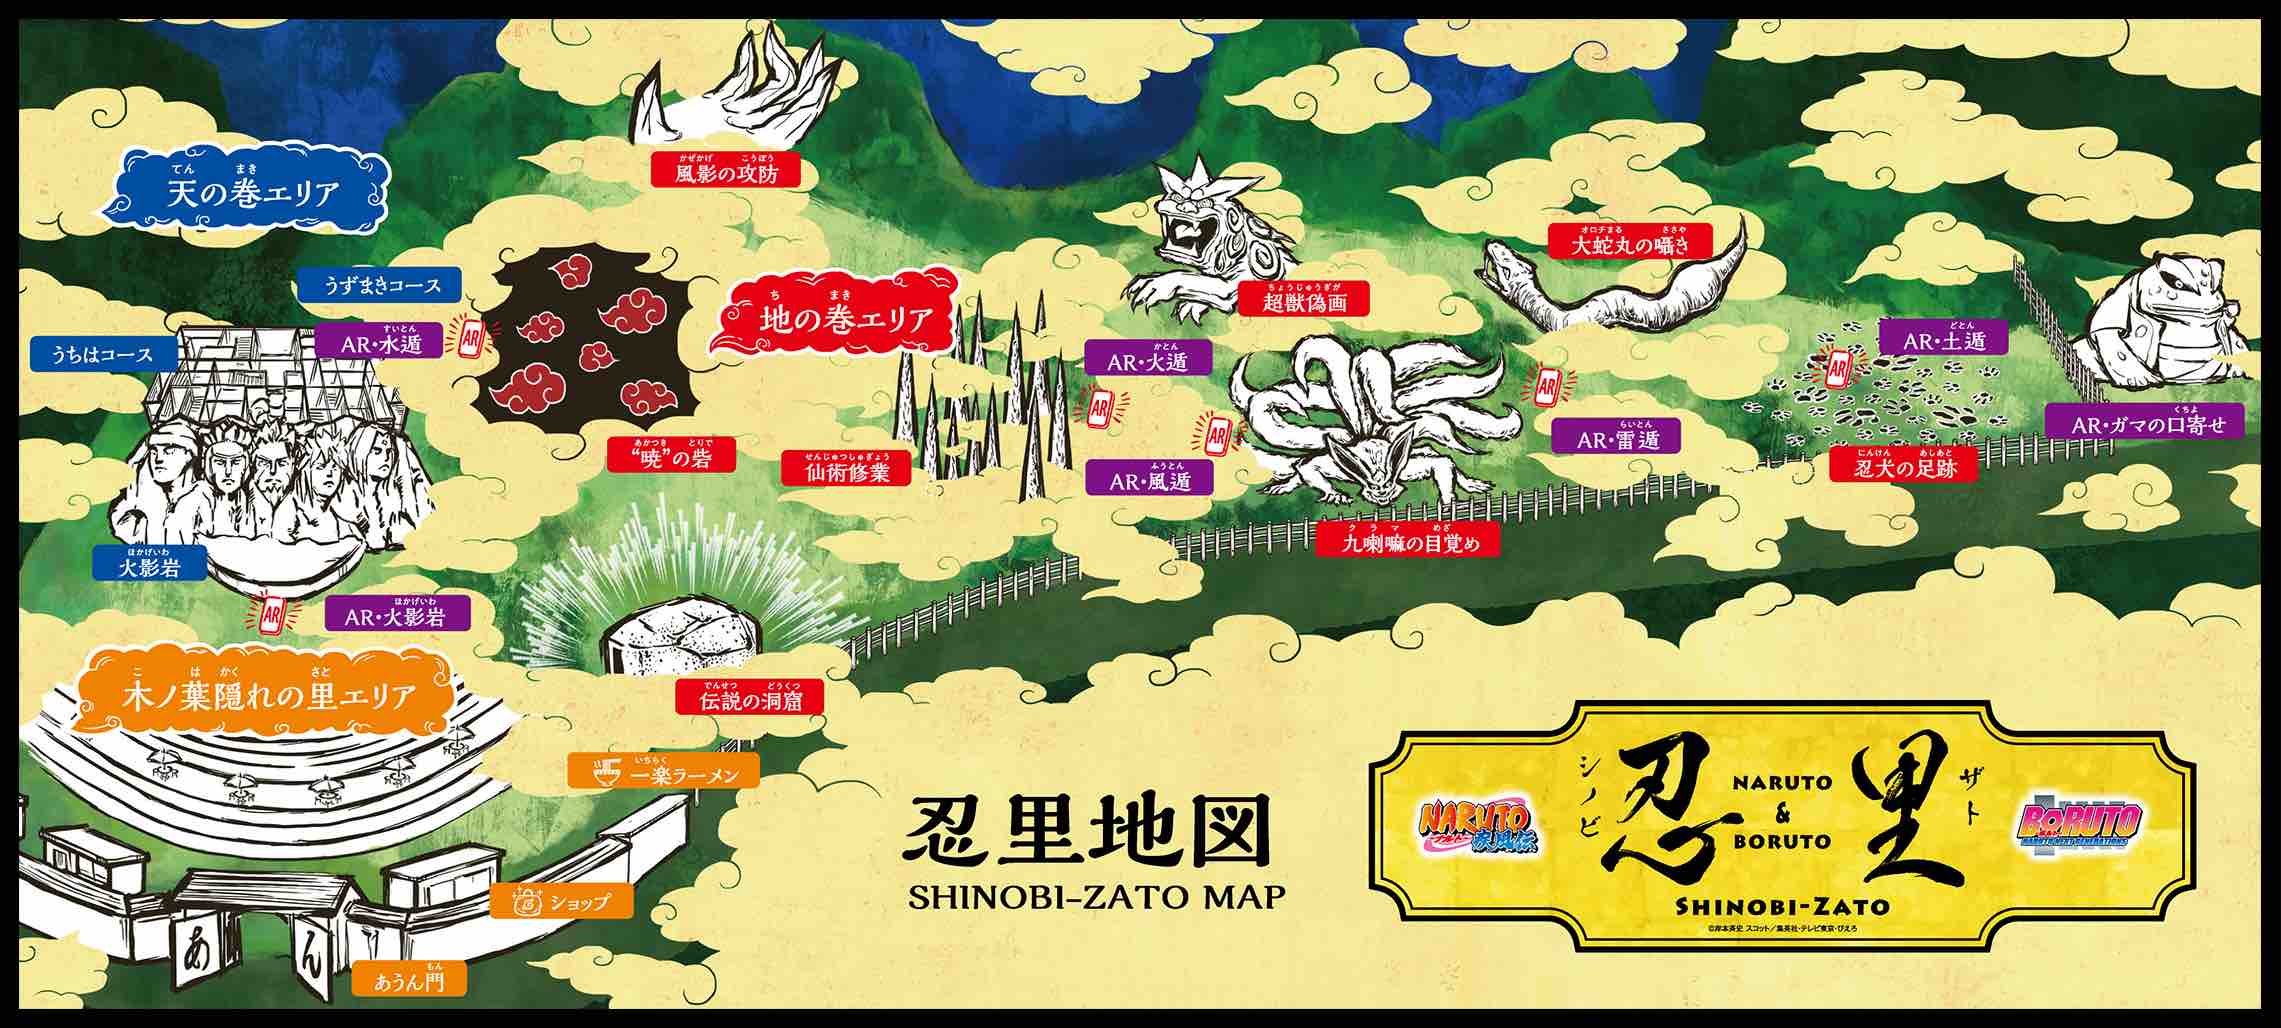 Le parc d'attraction Naruto ouvre ses portes au Japon #6